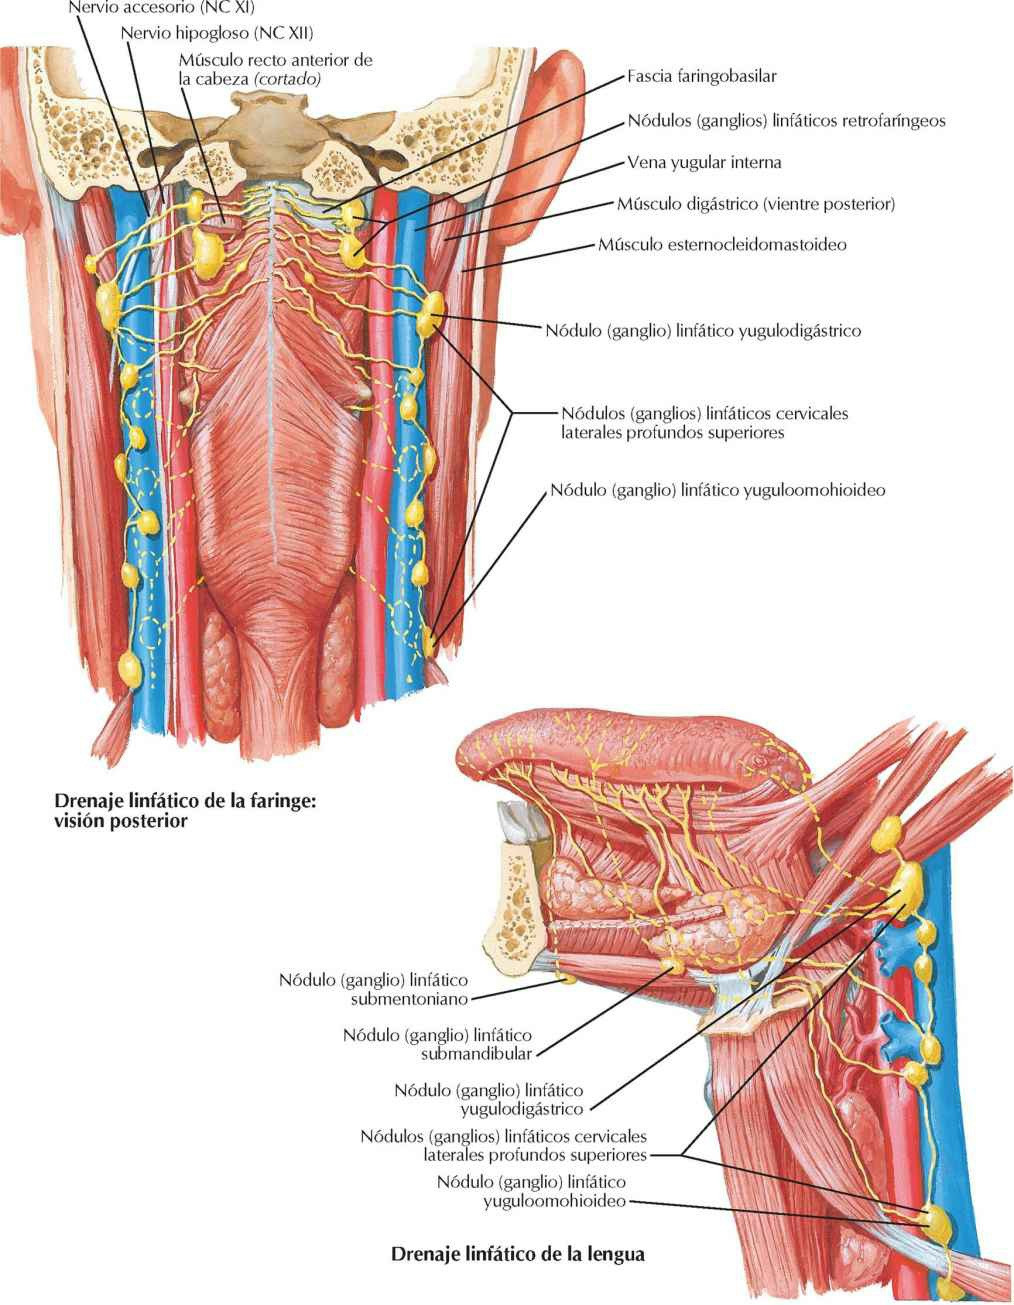 Vasos y nódulos (ganglios) linfáticos de la
faringe y lengua.